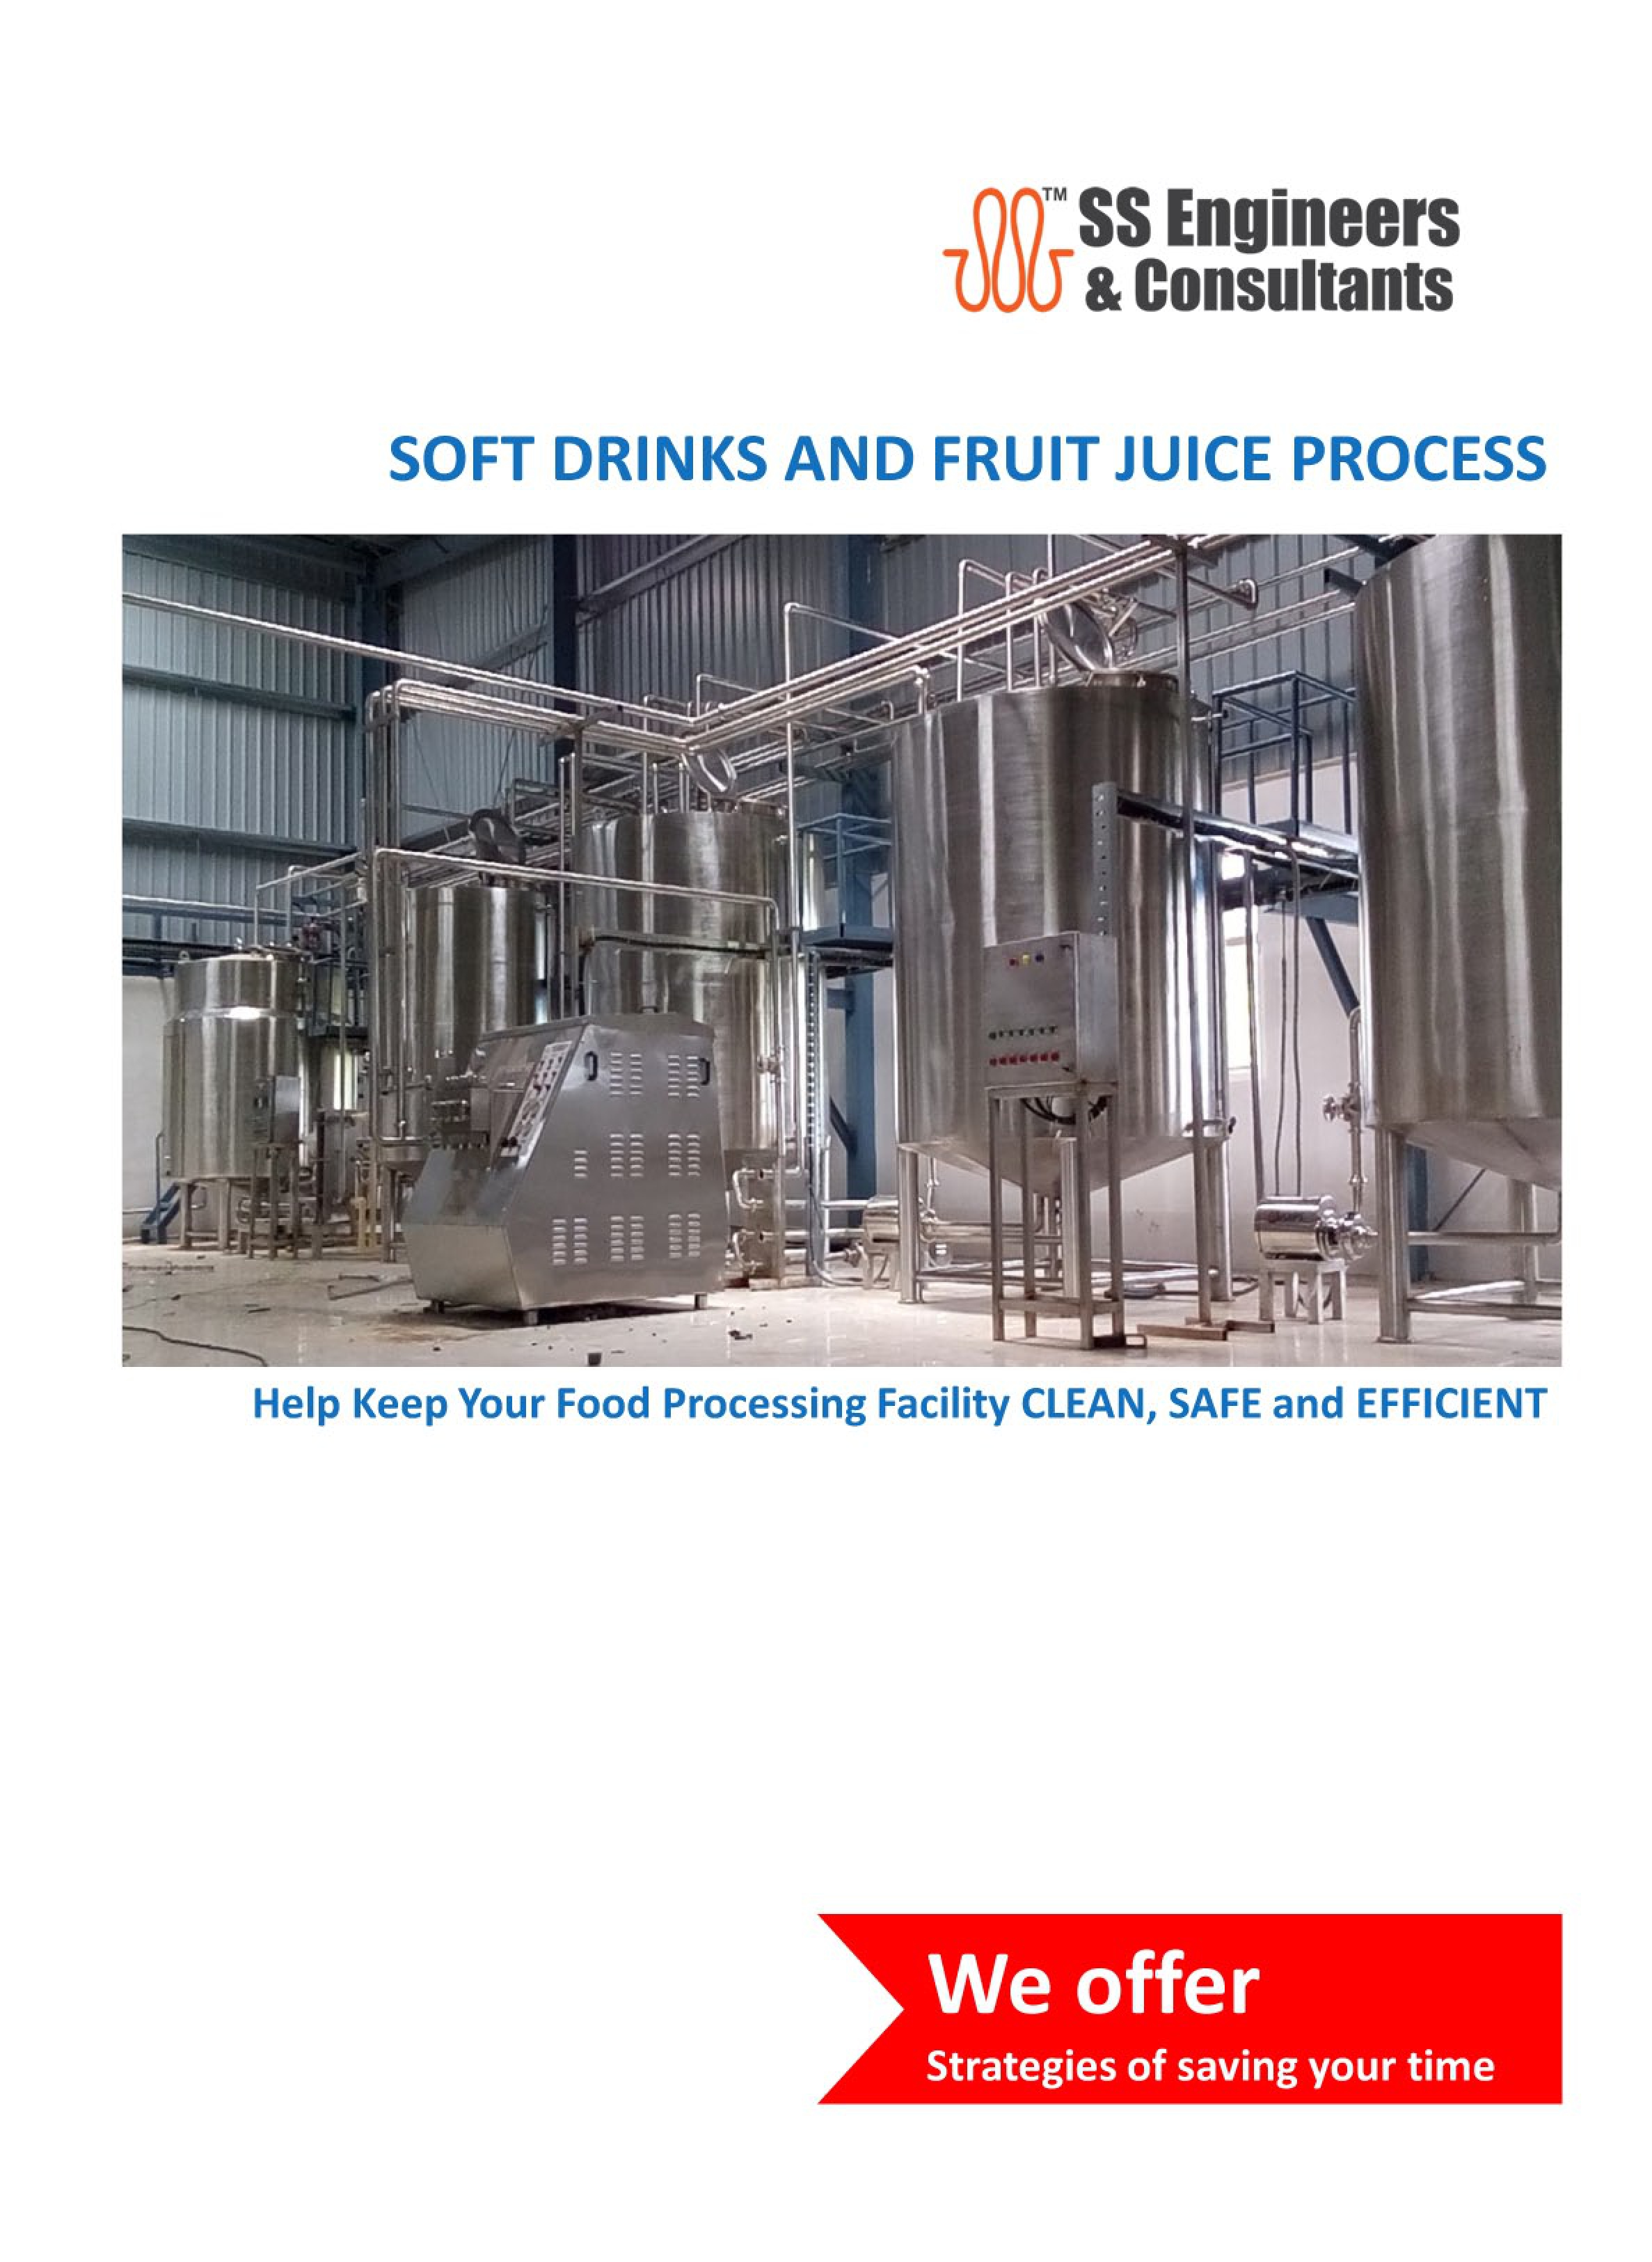 fruit juice processing